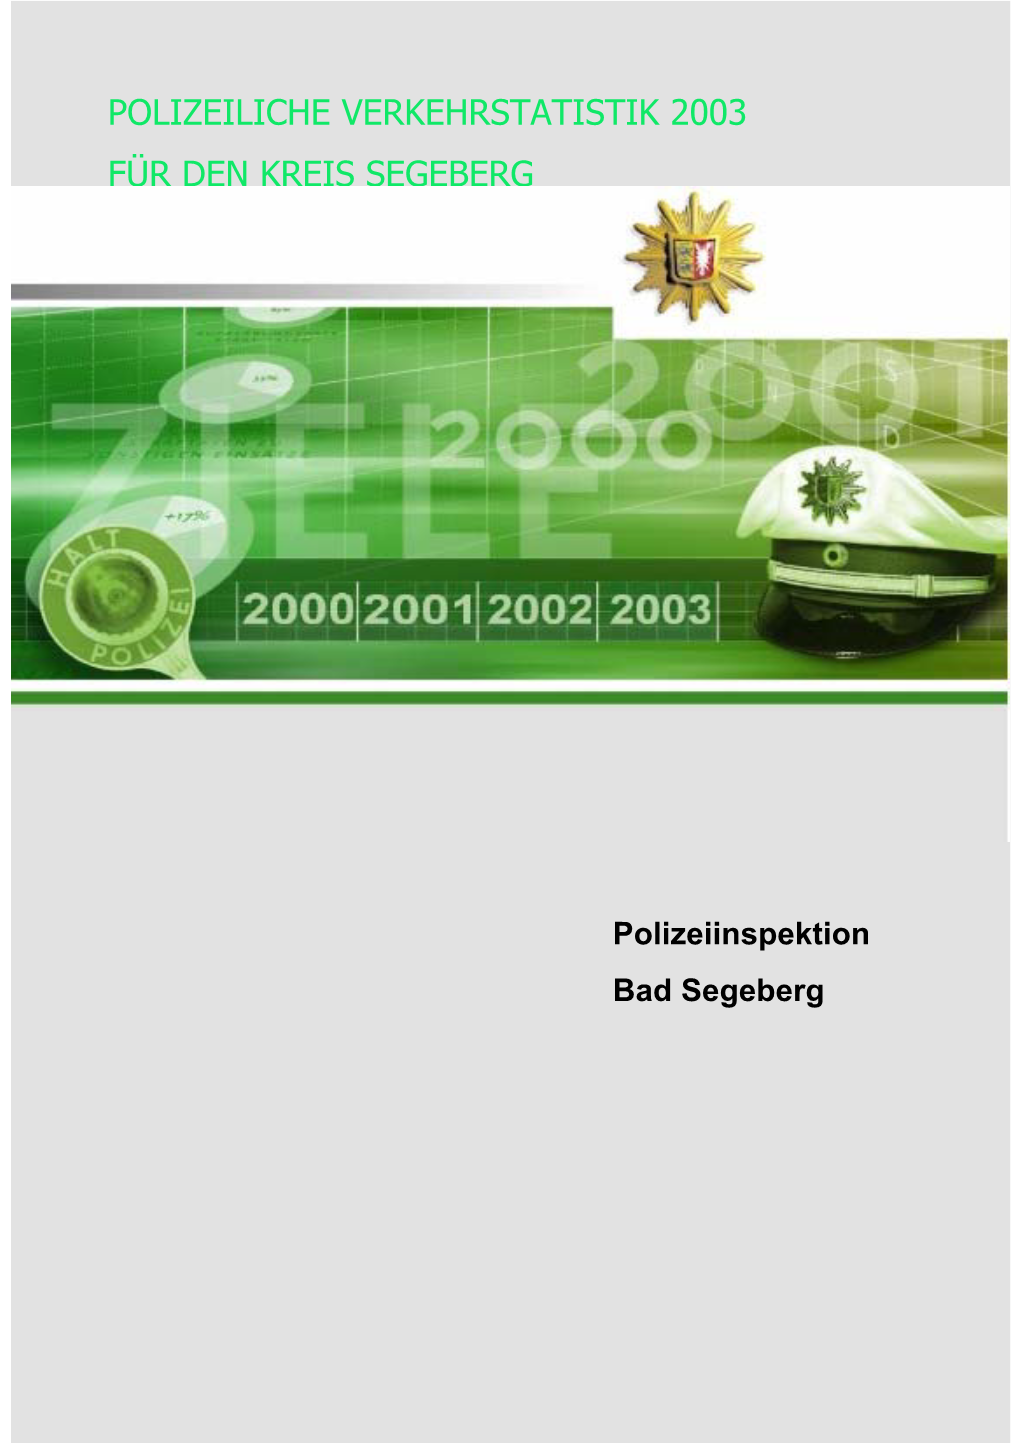 Verkehrsunfallstatistik Der PI Bad Segeberg-2003